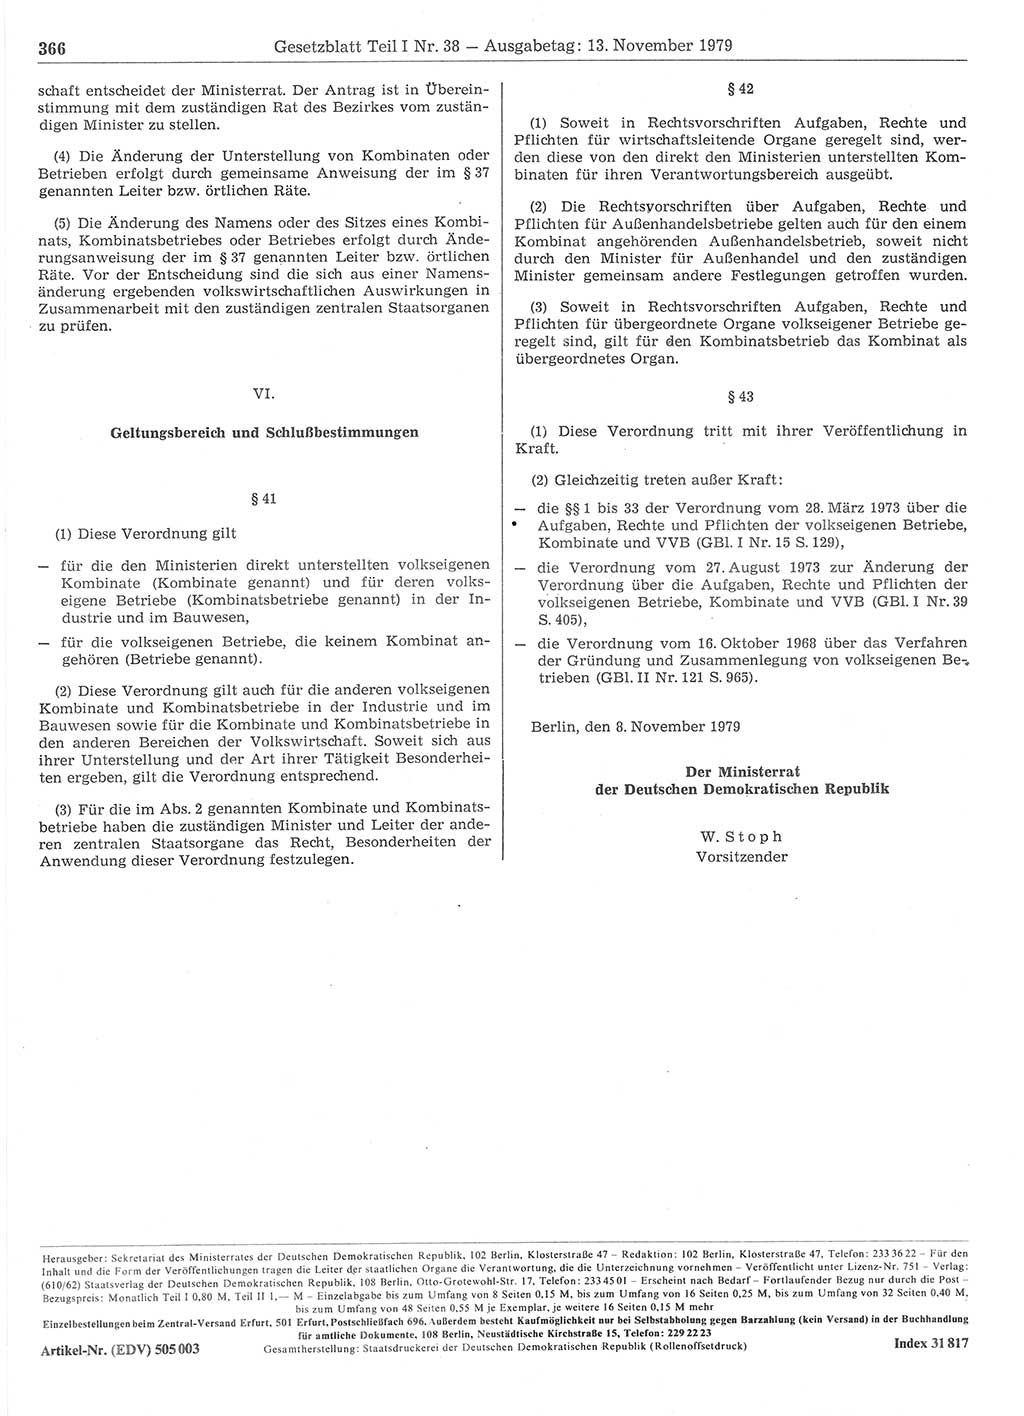 Gesetzblatt (GBl.) der Deutschen Demokratischen Republik (DDR) Teil Ⅰ 1979, Seite 366 (GBl. DDR Ⅰ 1979, S. 366)